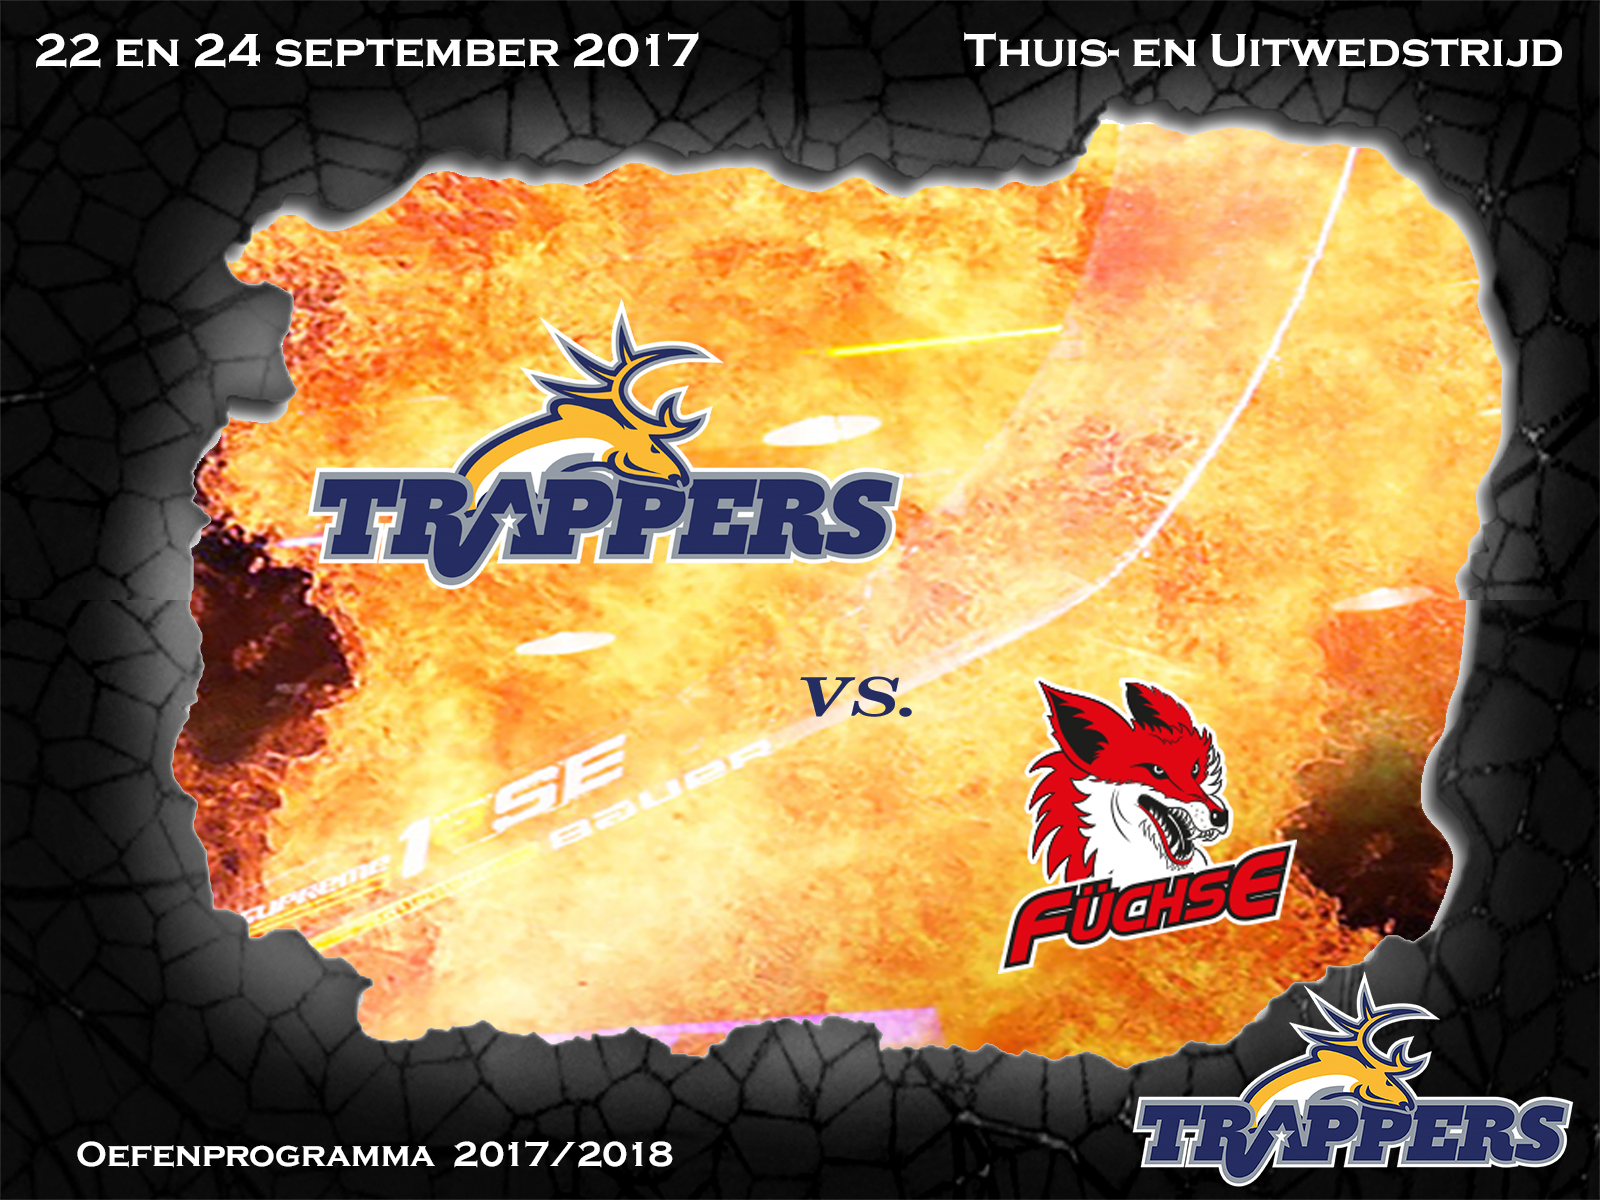 Voorbeschouwing: Tilburg Trappers vs. Füchse Duisburg